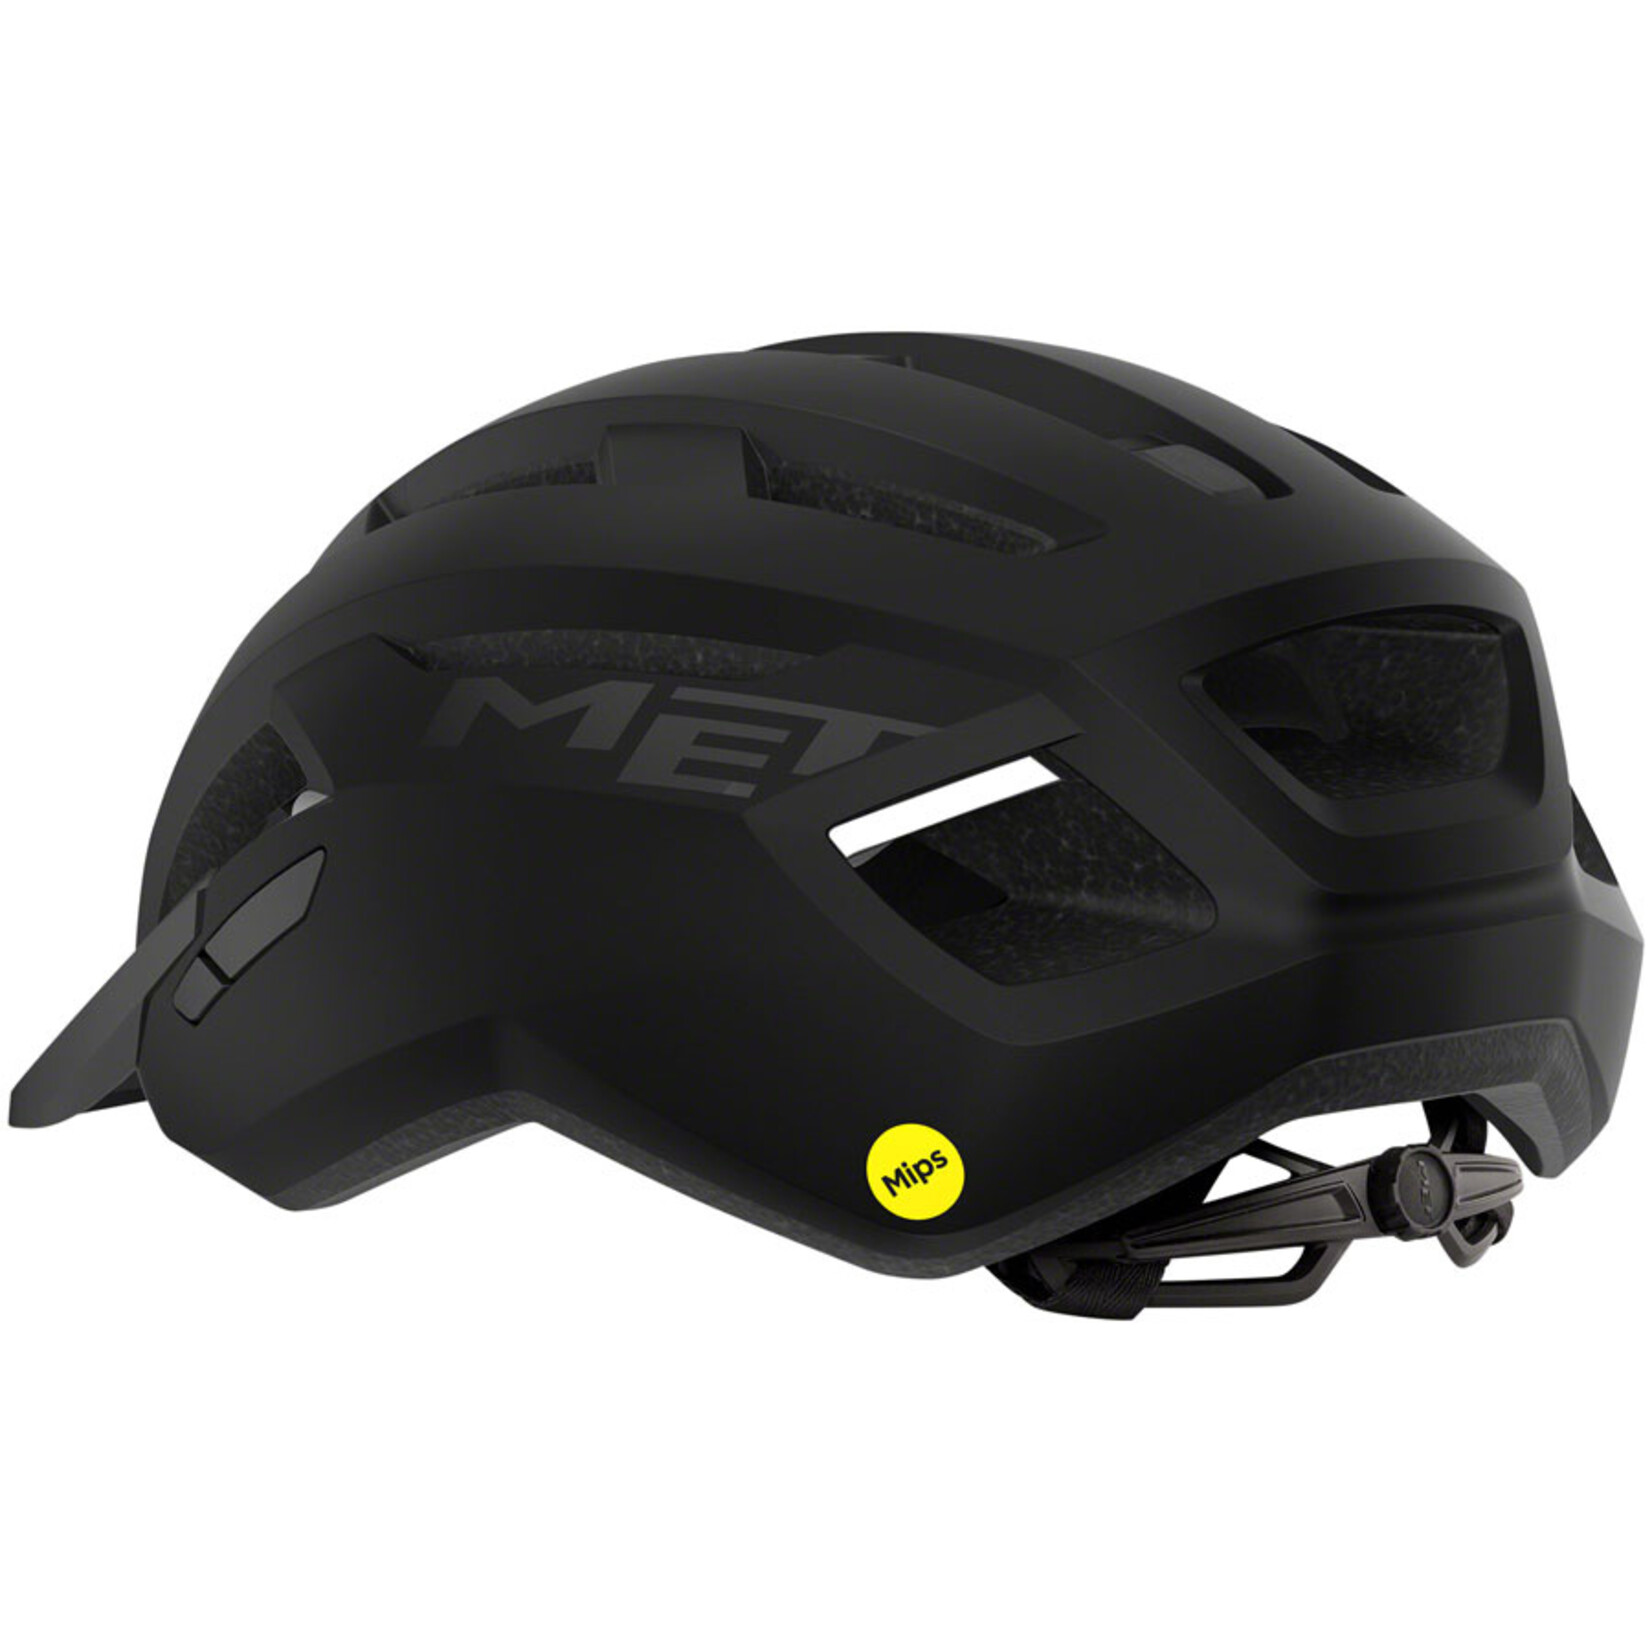 MET Helmets MET Allroad MIPS Helmet - Black, Matte, Small